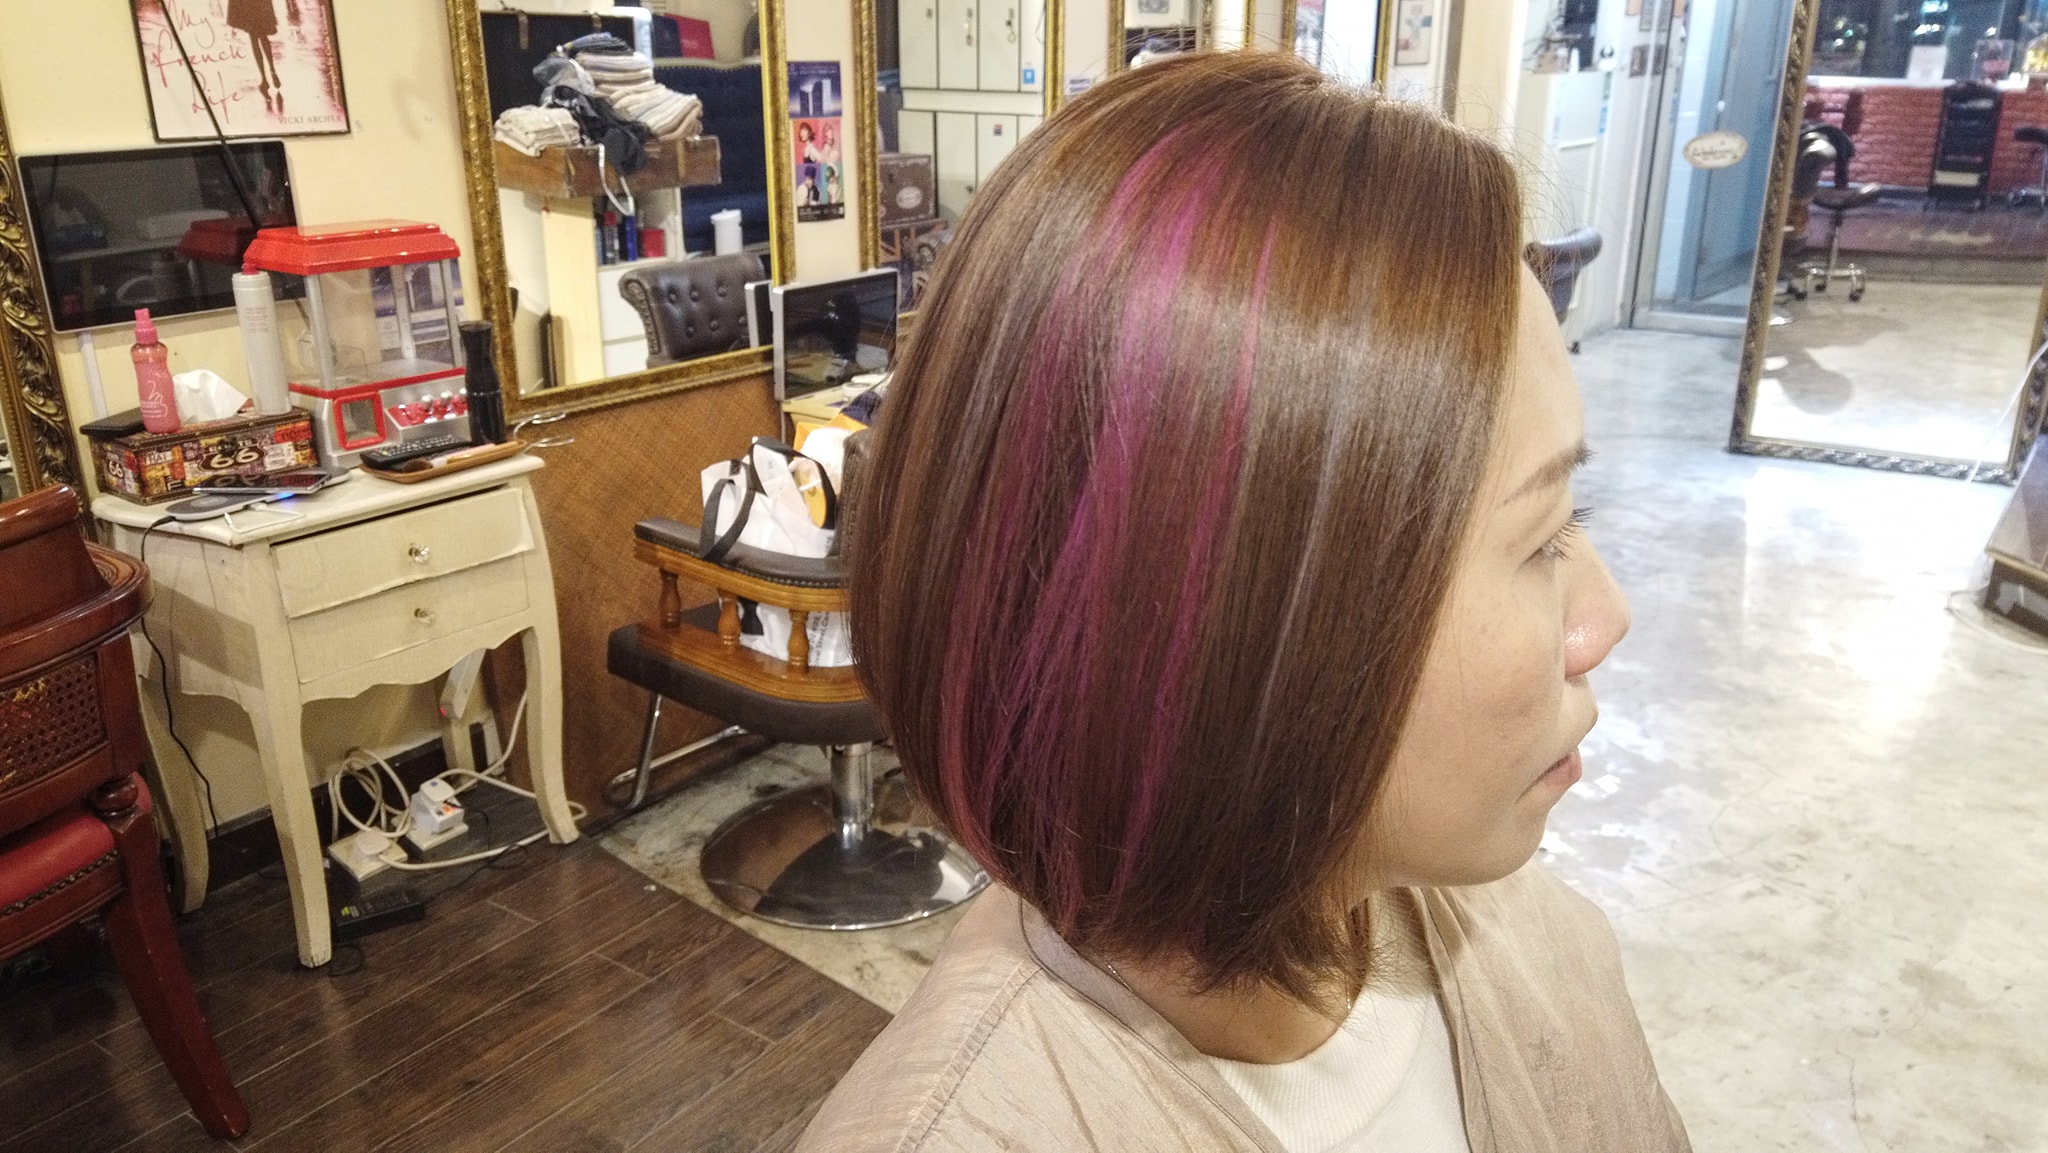 髮型作品參考:shiseido colormuse ice pink